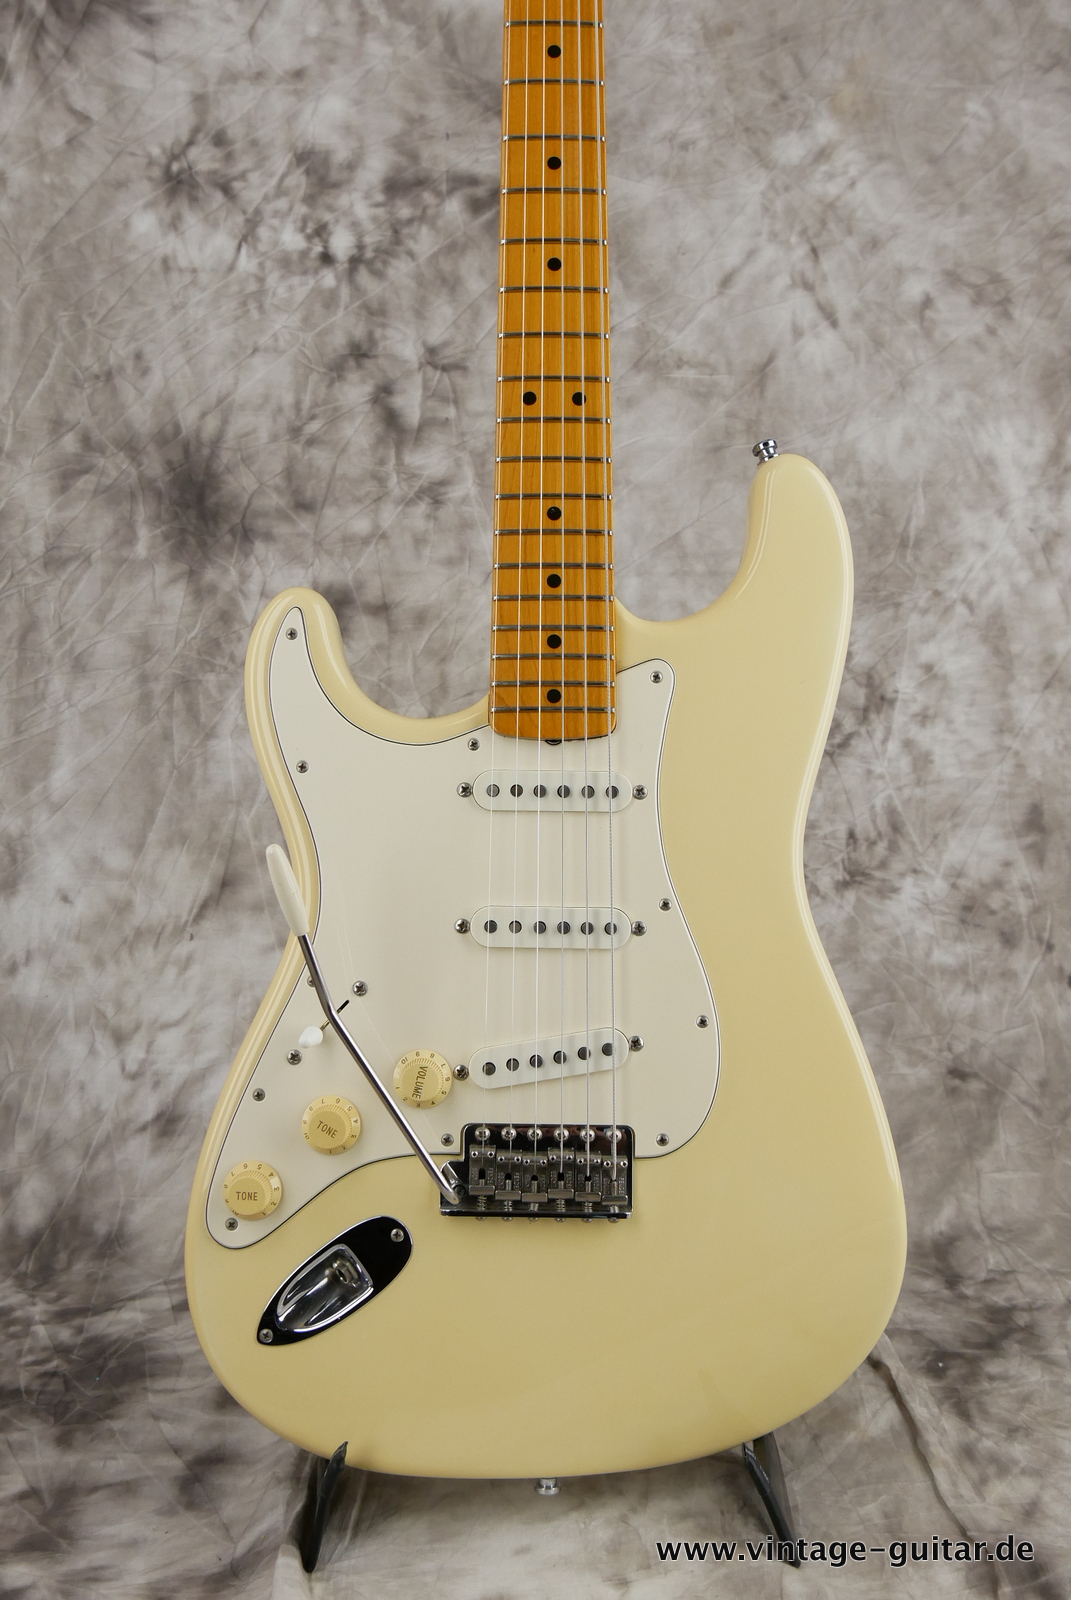 Fender_Stratocaster_Jimi_Hemdrix_Tribute_1997_olympic_white-007.JPG